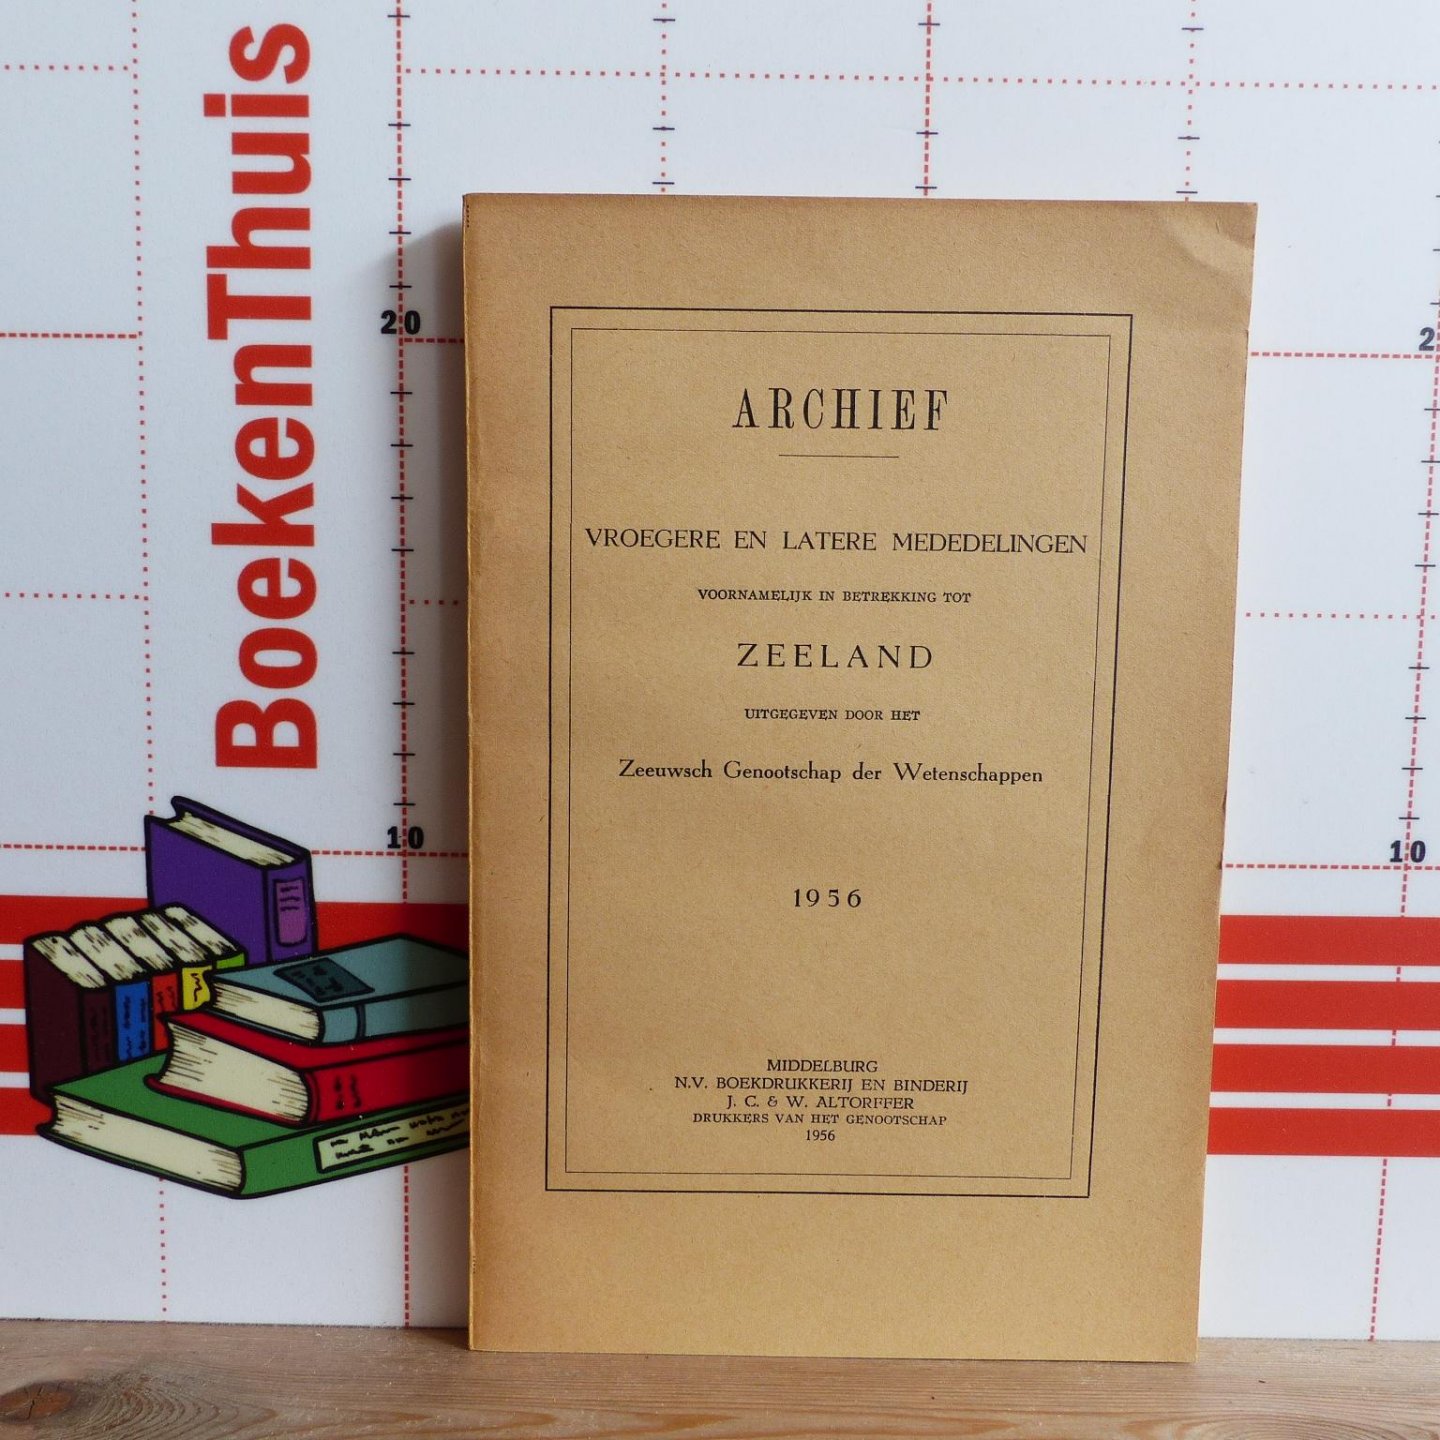 Zeeuwsch Genootschap der Wetenschappen - archief - vroegere en latere mededelingen voornamelijk in betrekking tot Zeeland